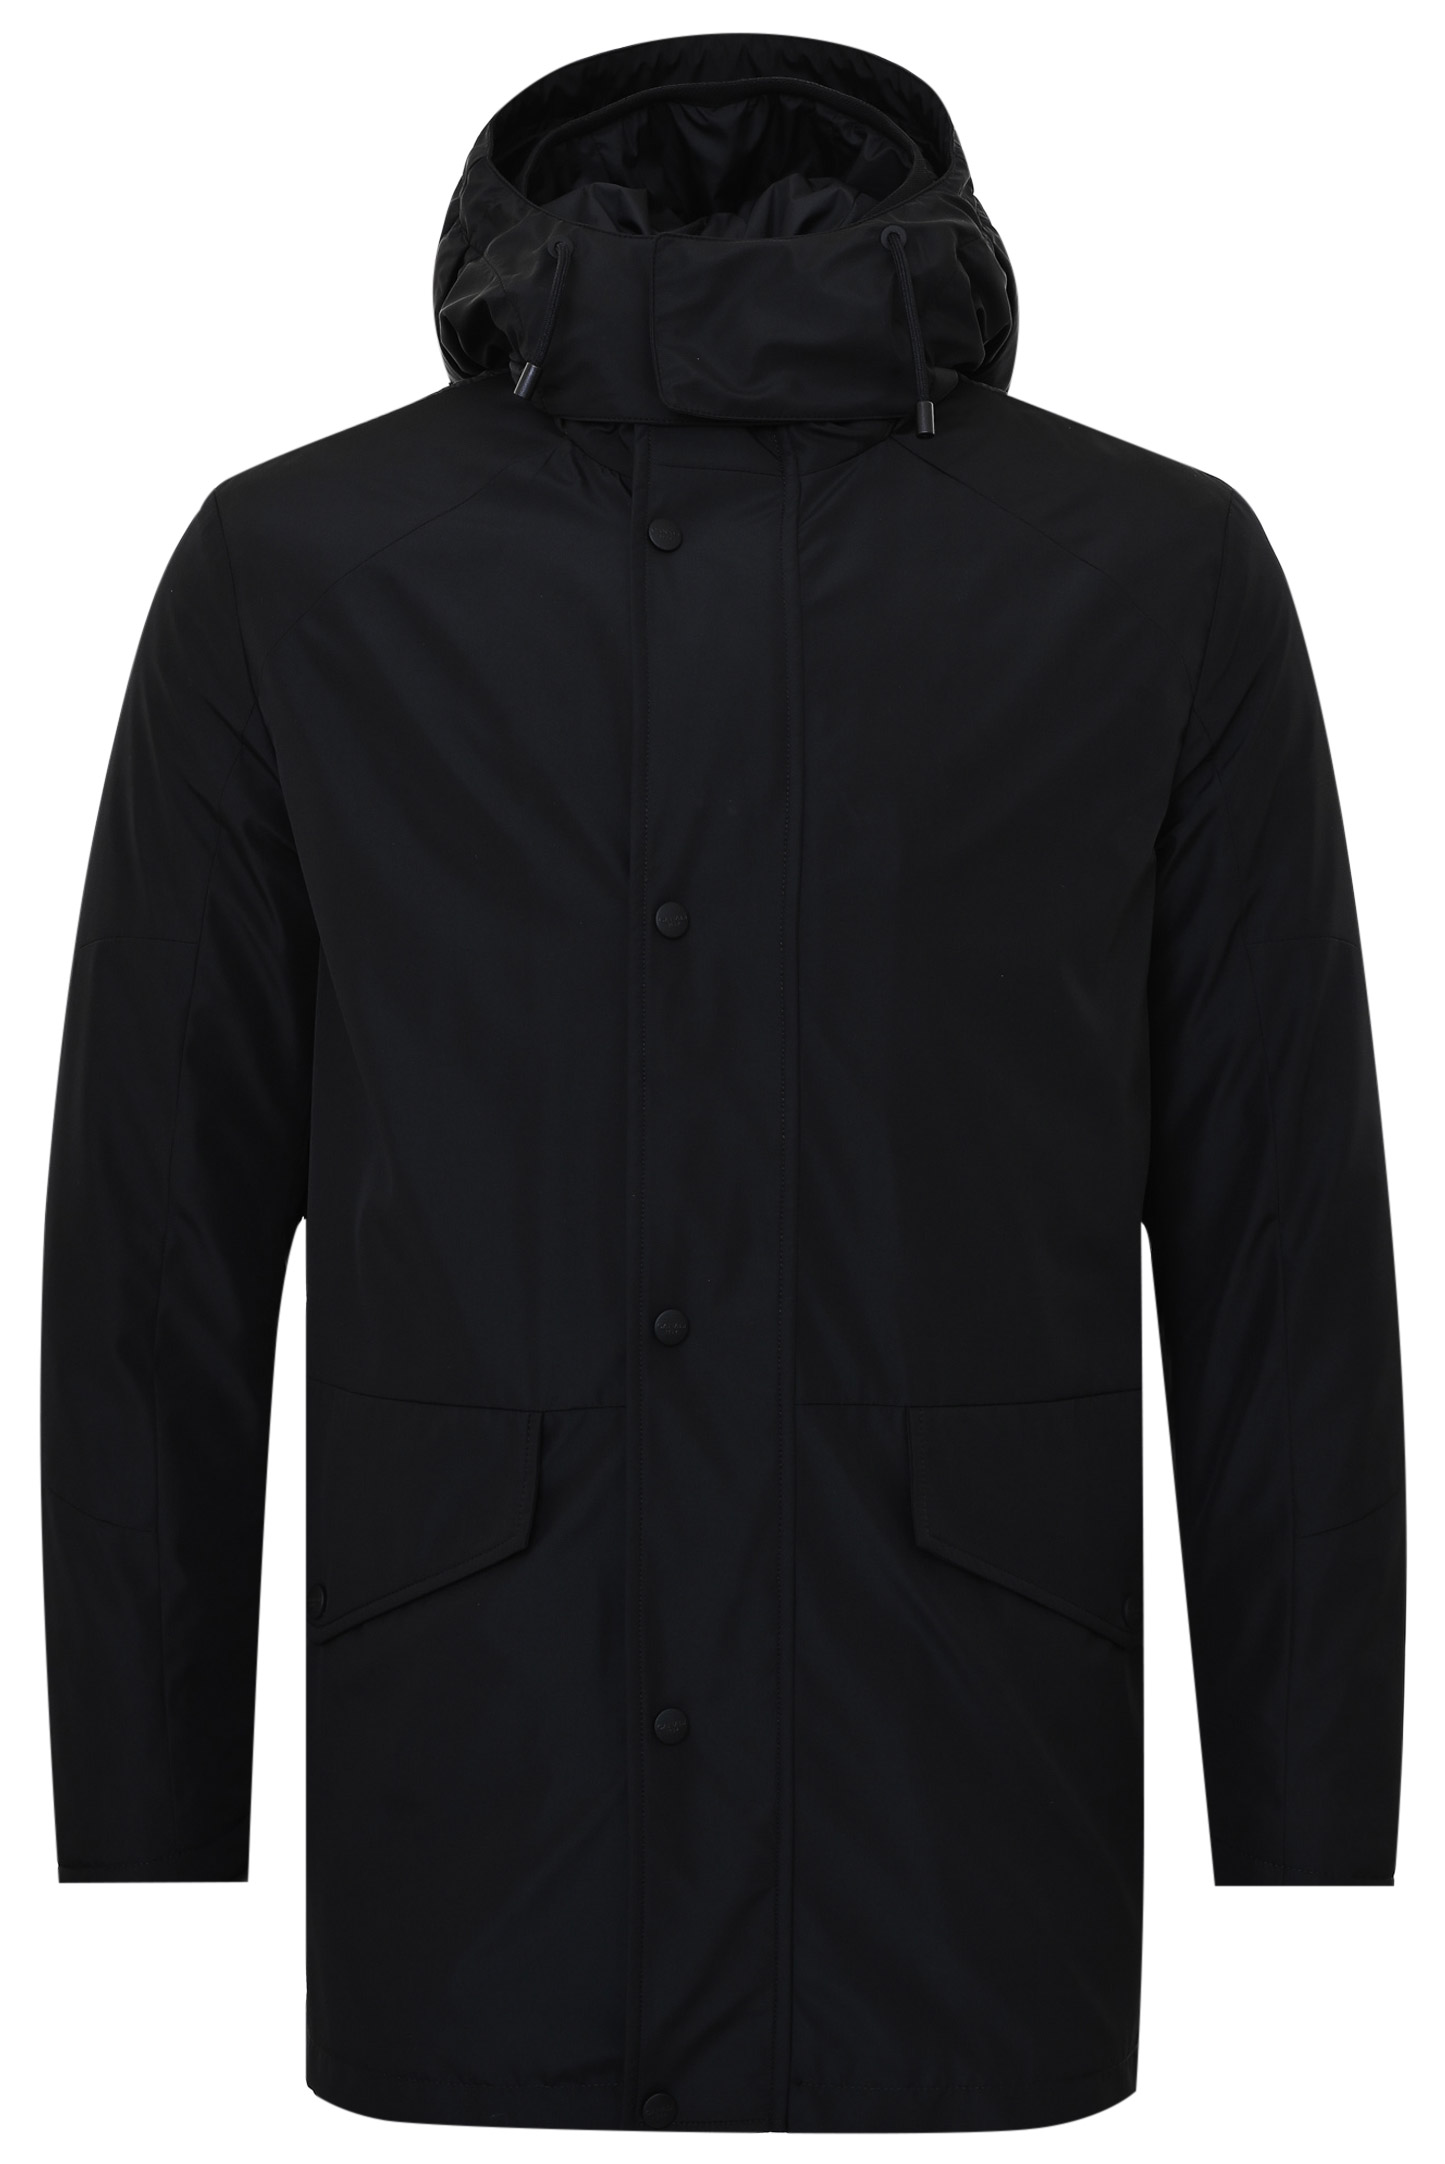 Куртка CANALI SY01788 O20312, цвет: Черный, Мужской